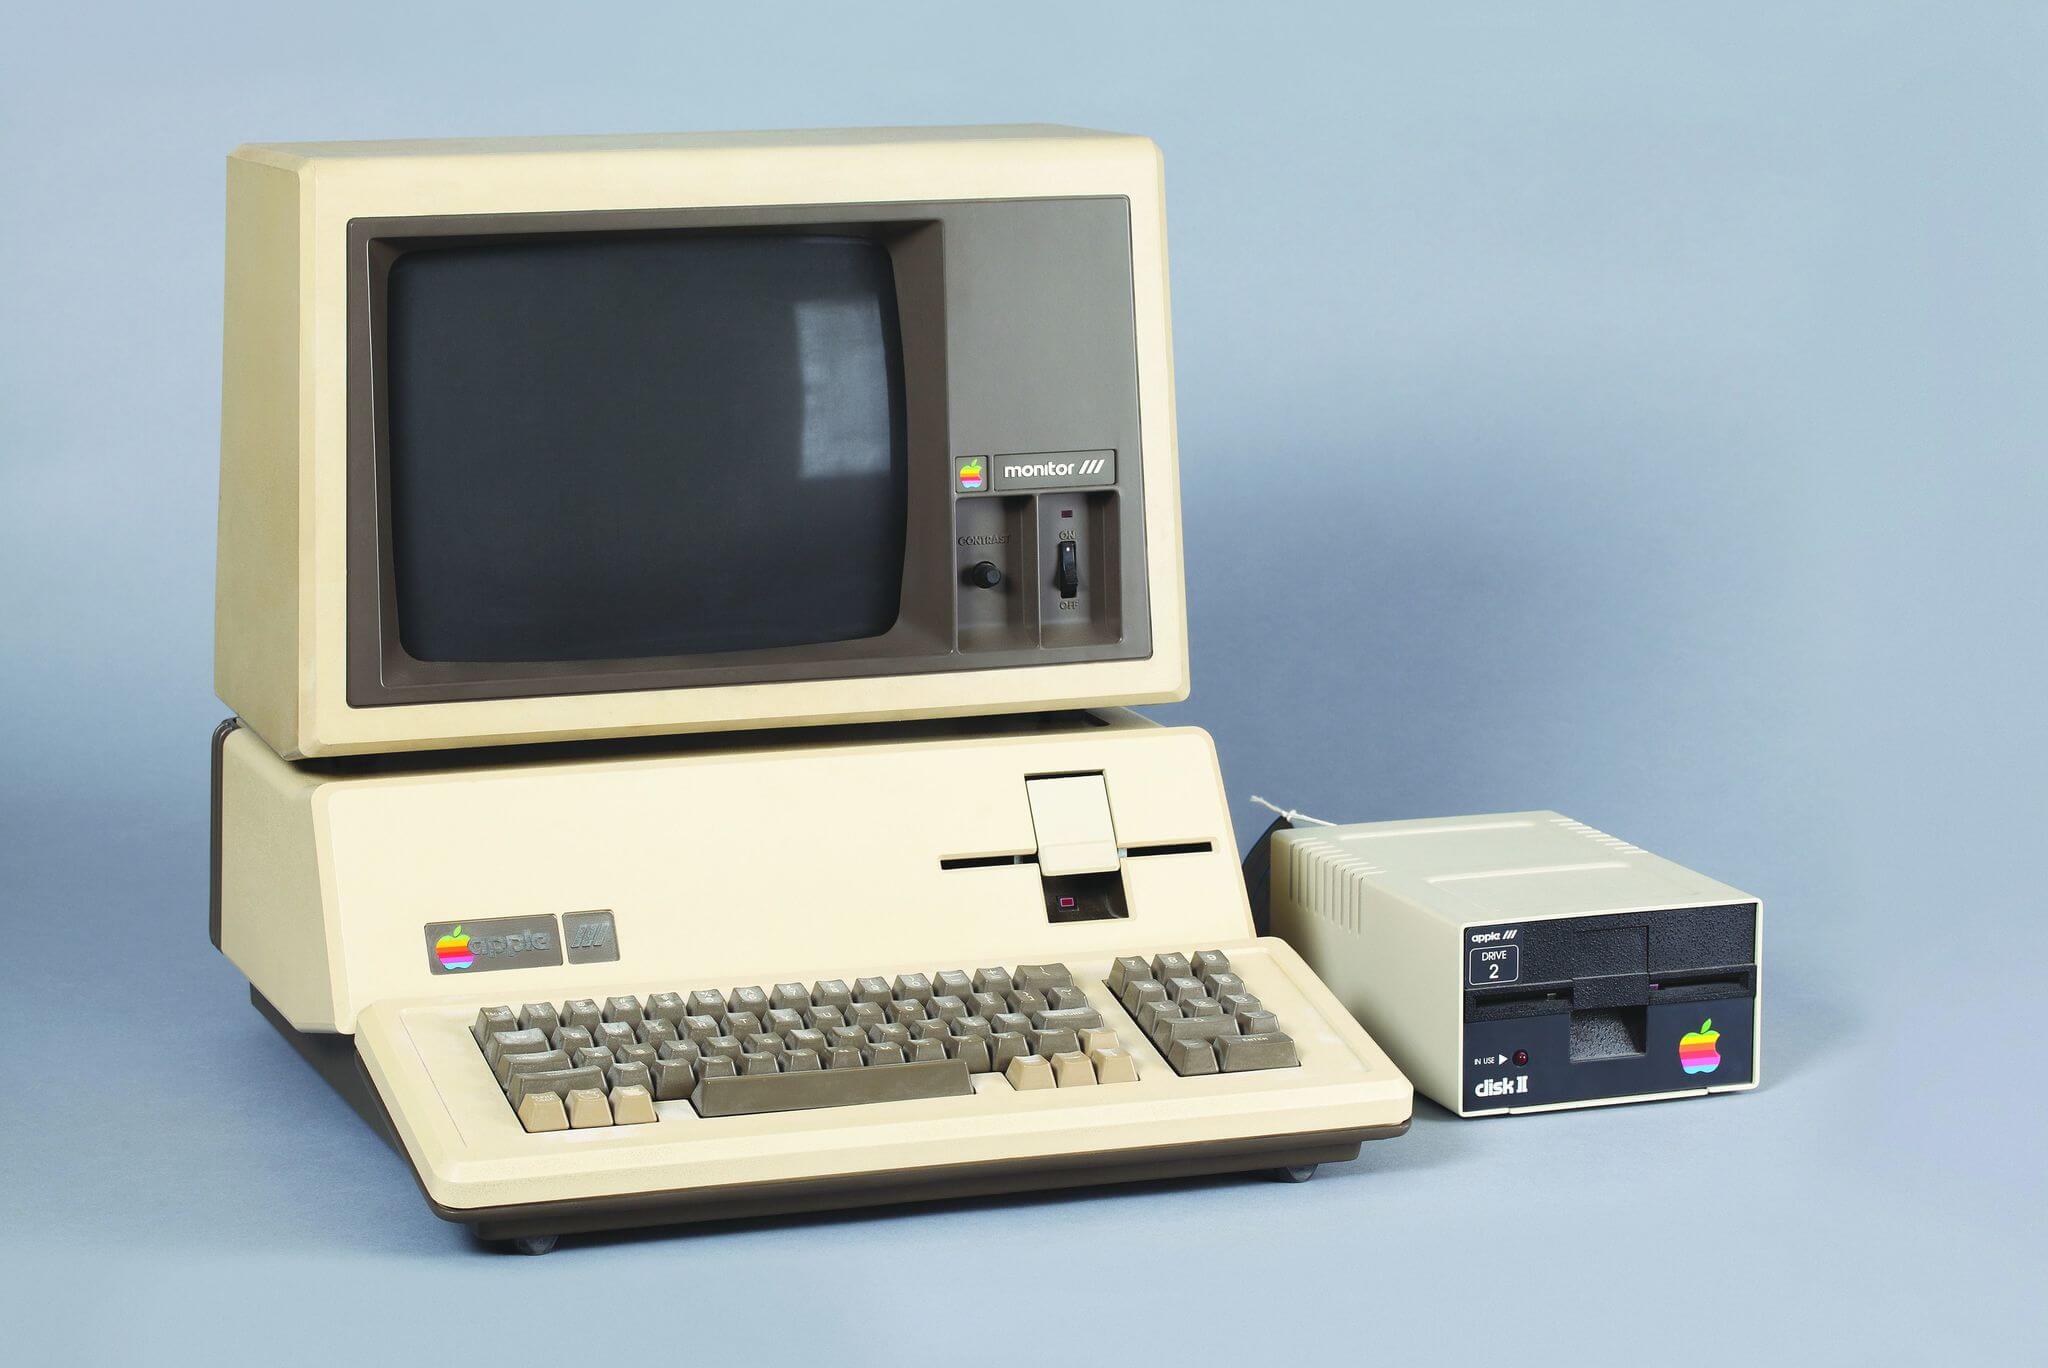 Этот день в истории Apple: состоялось долгожданное представление Apple III